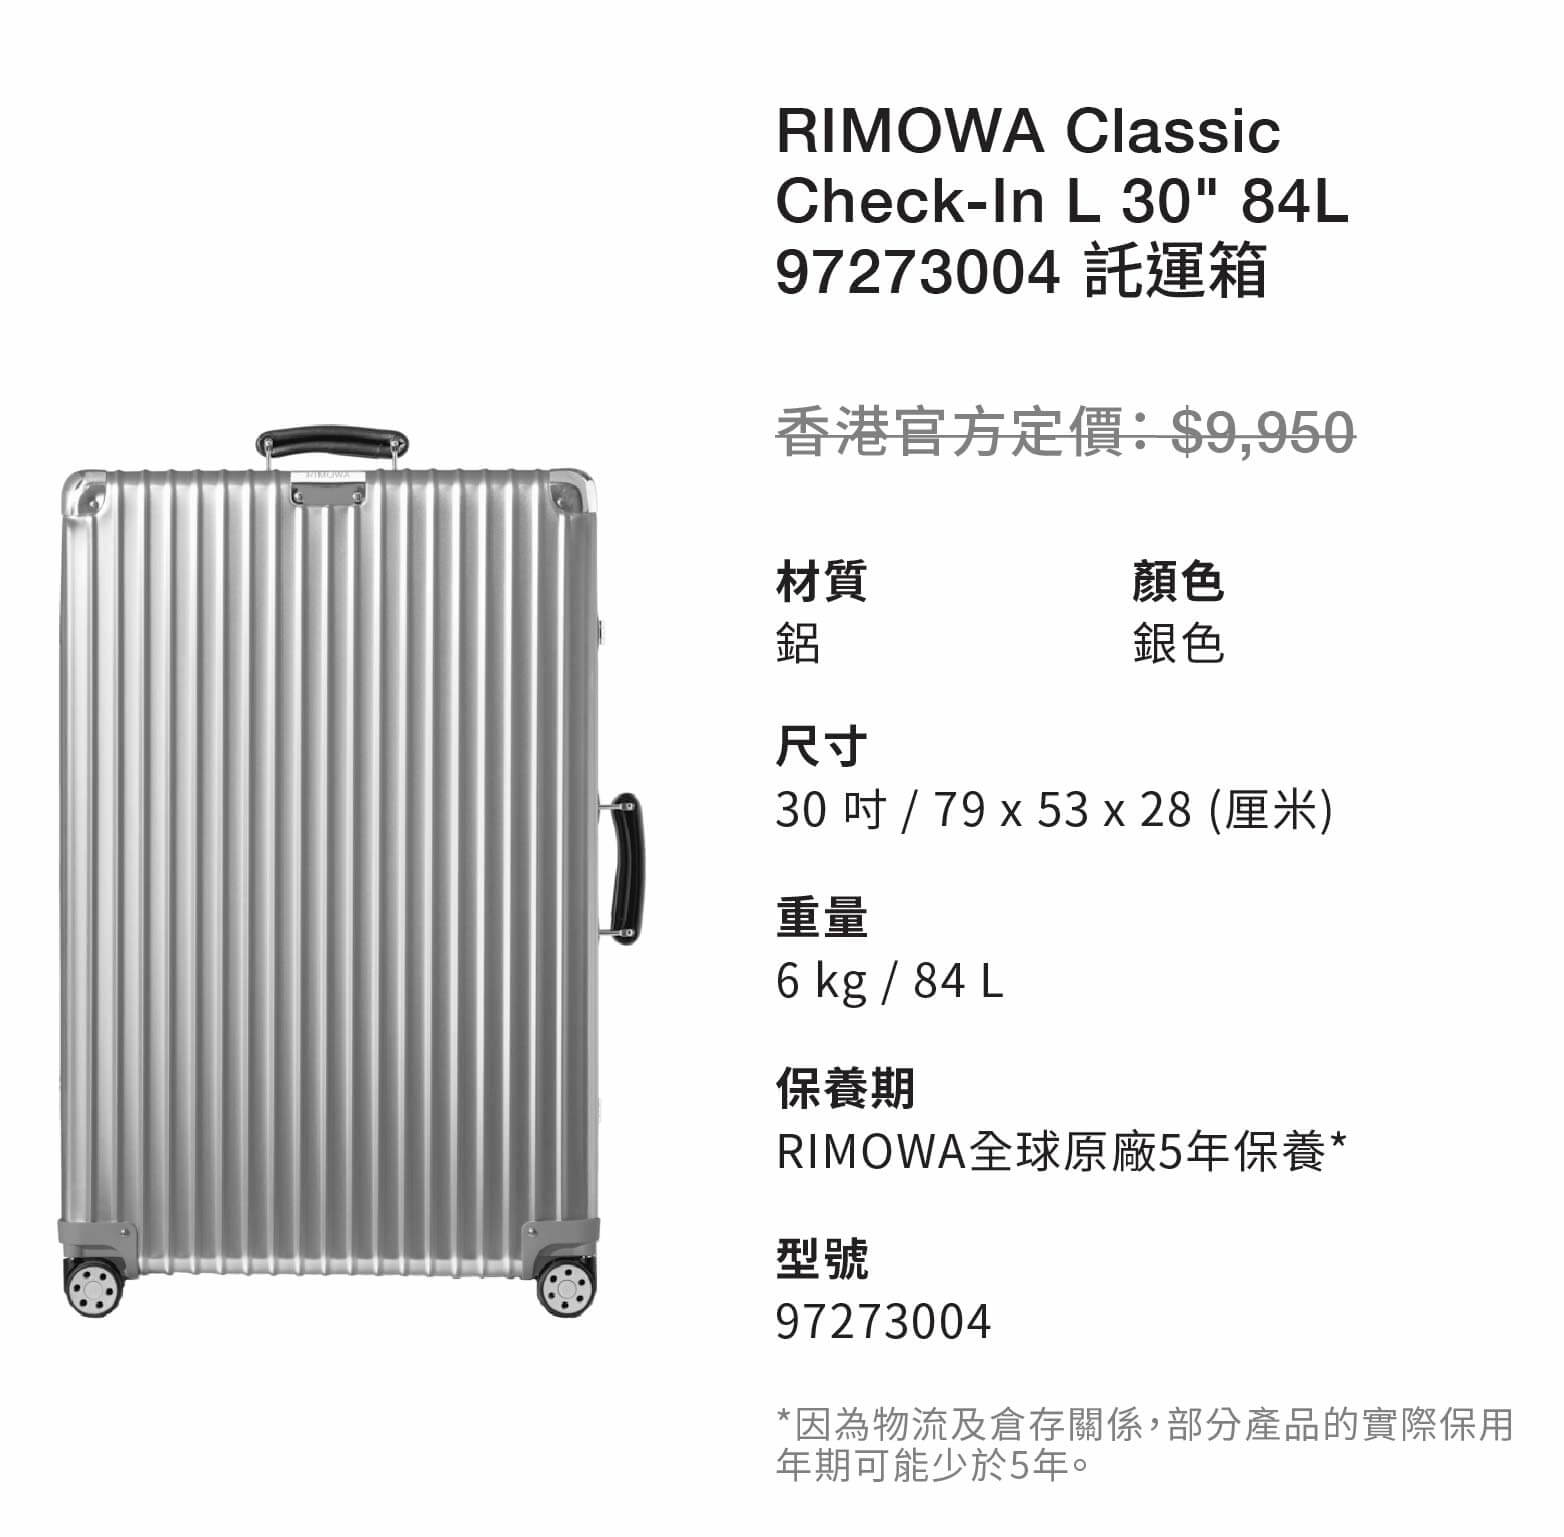 RIMOWA Classic Check-In L 30